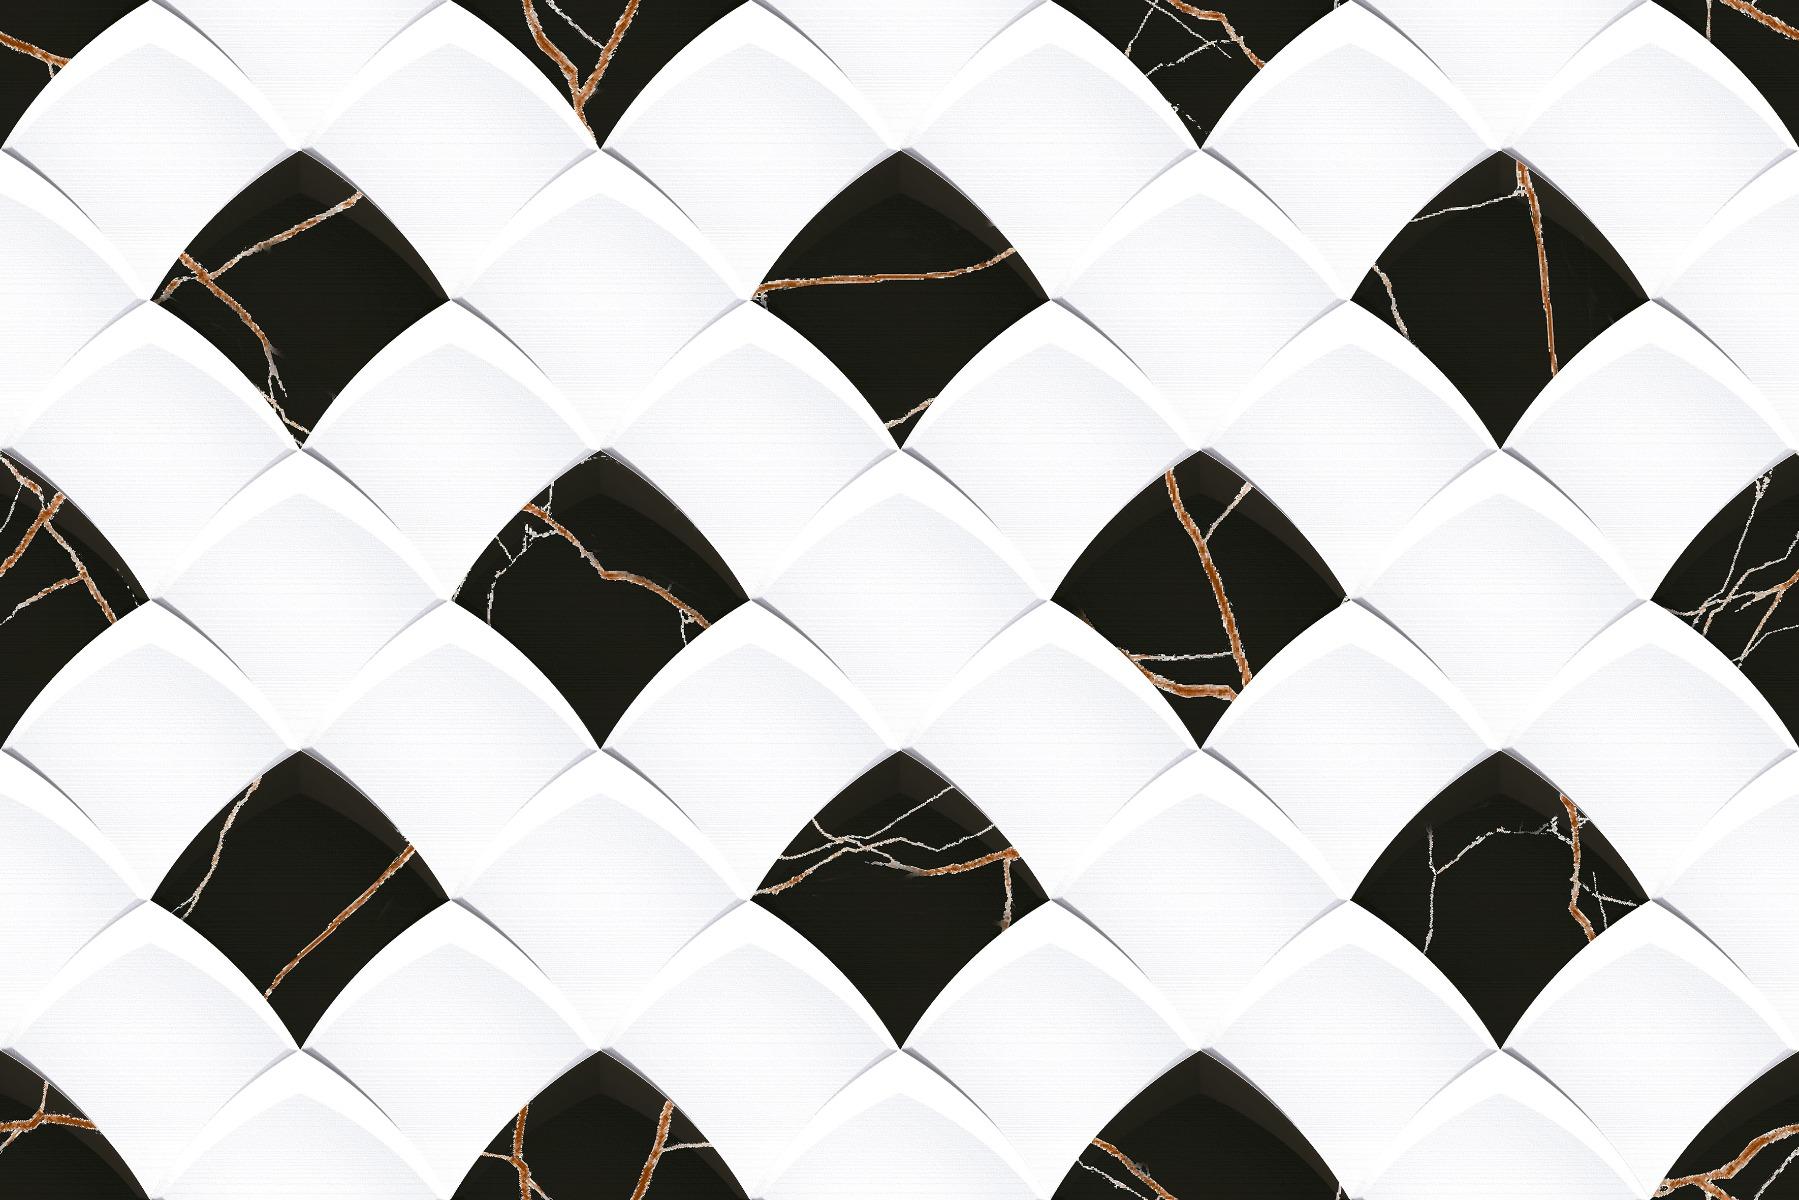 Black Tiles for Bathroom Tiles, Living Room Tiles, Accent Tiles